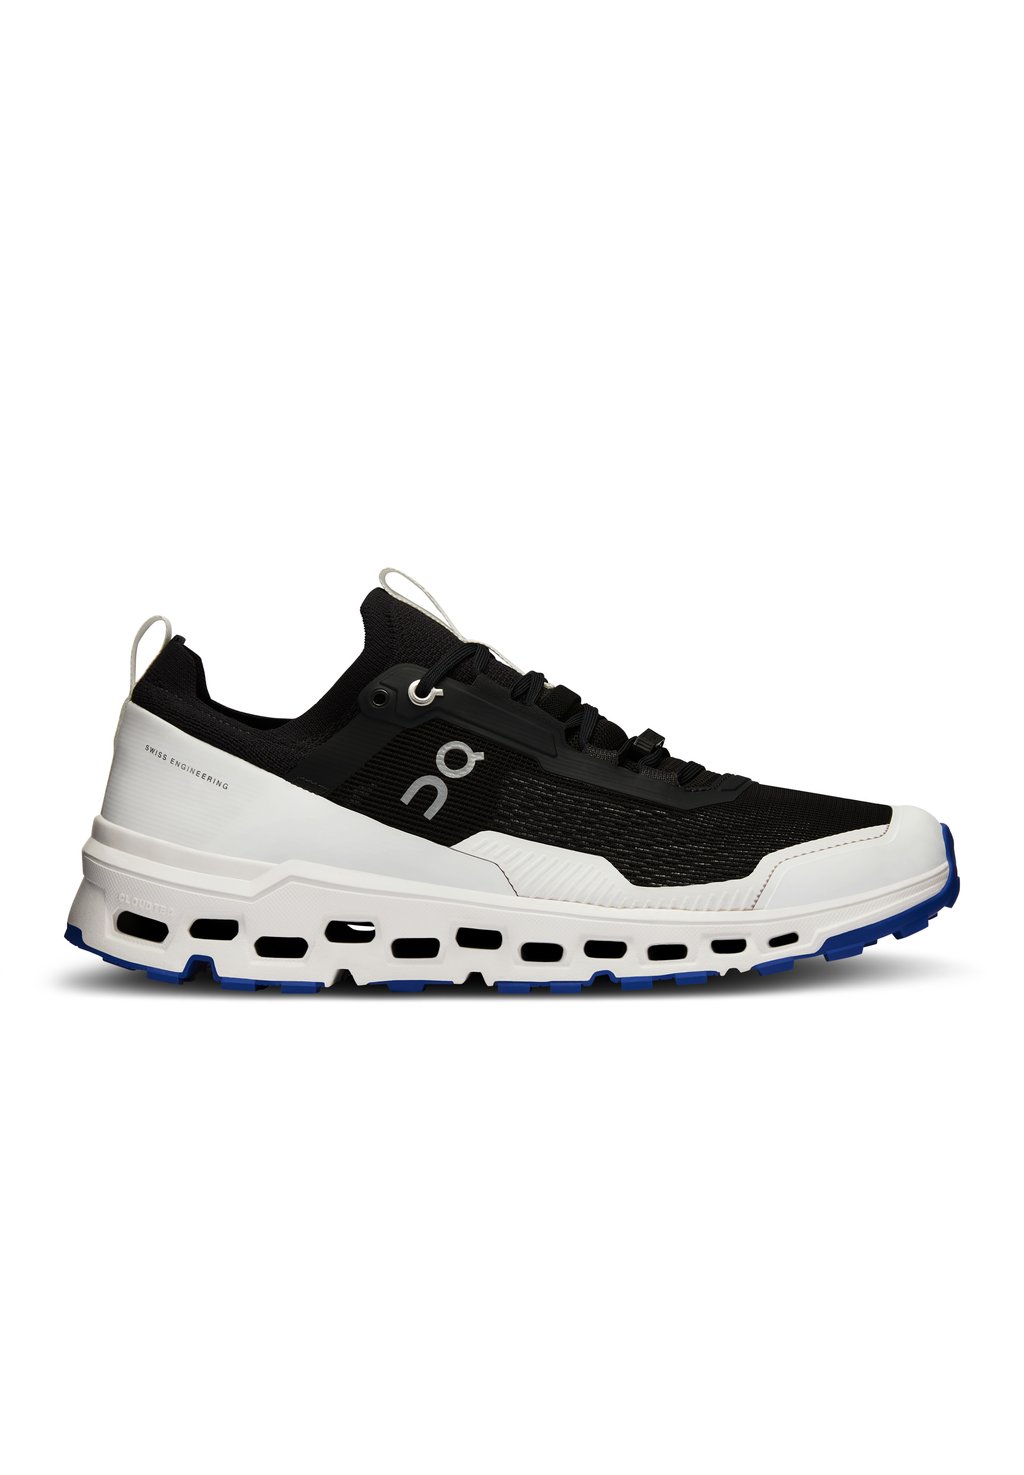 Кроссовки для бега по пересеченной местности CLOUDULTRA 2 On, цвет black white кроссовки для бега по пересеченной местности cloudultra 2 мужские on синий